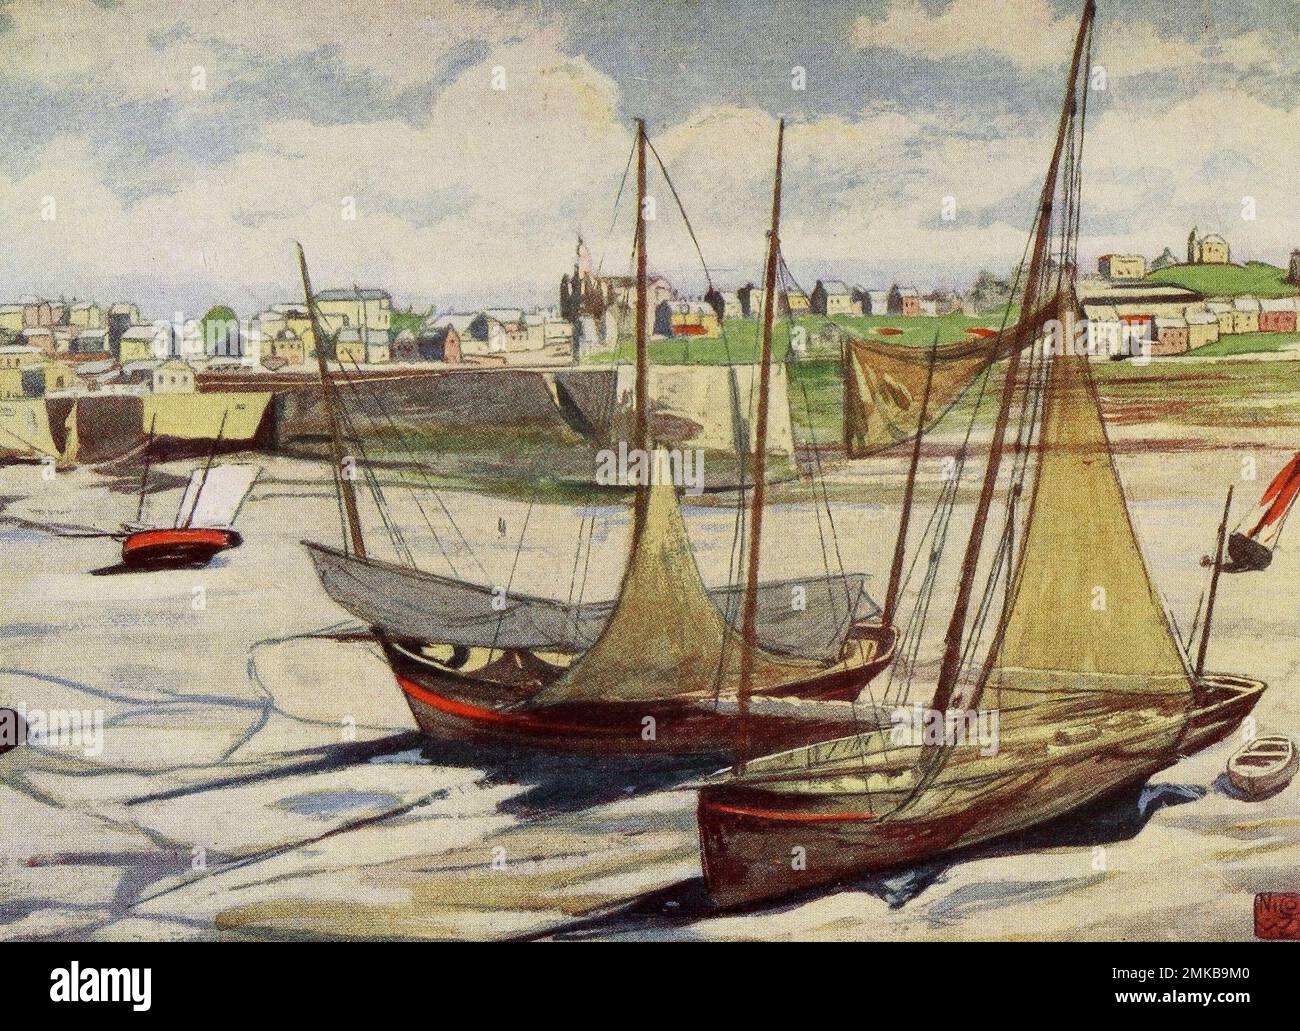 Le port à marée basse, Granville, Normandie, France, vers 1900 Banque D'Images